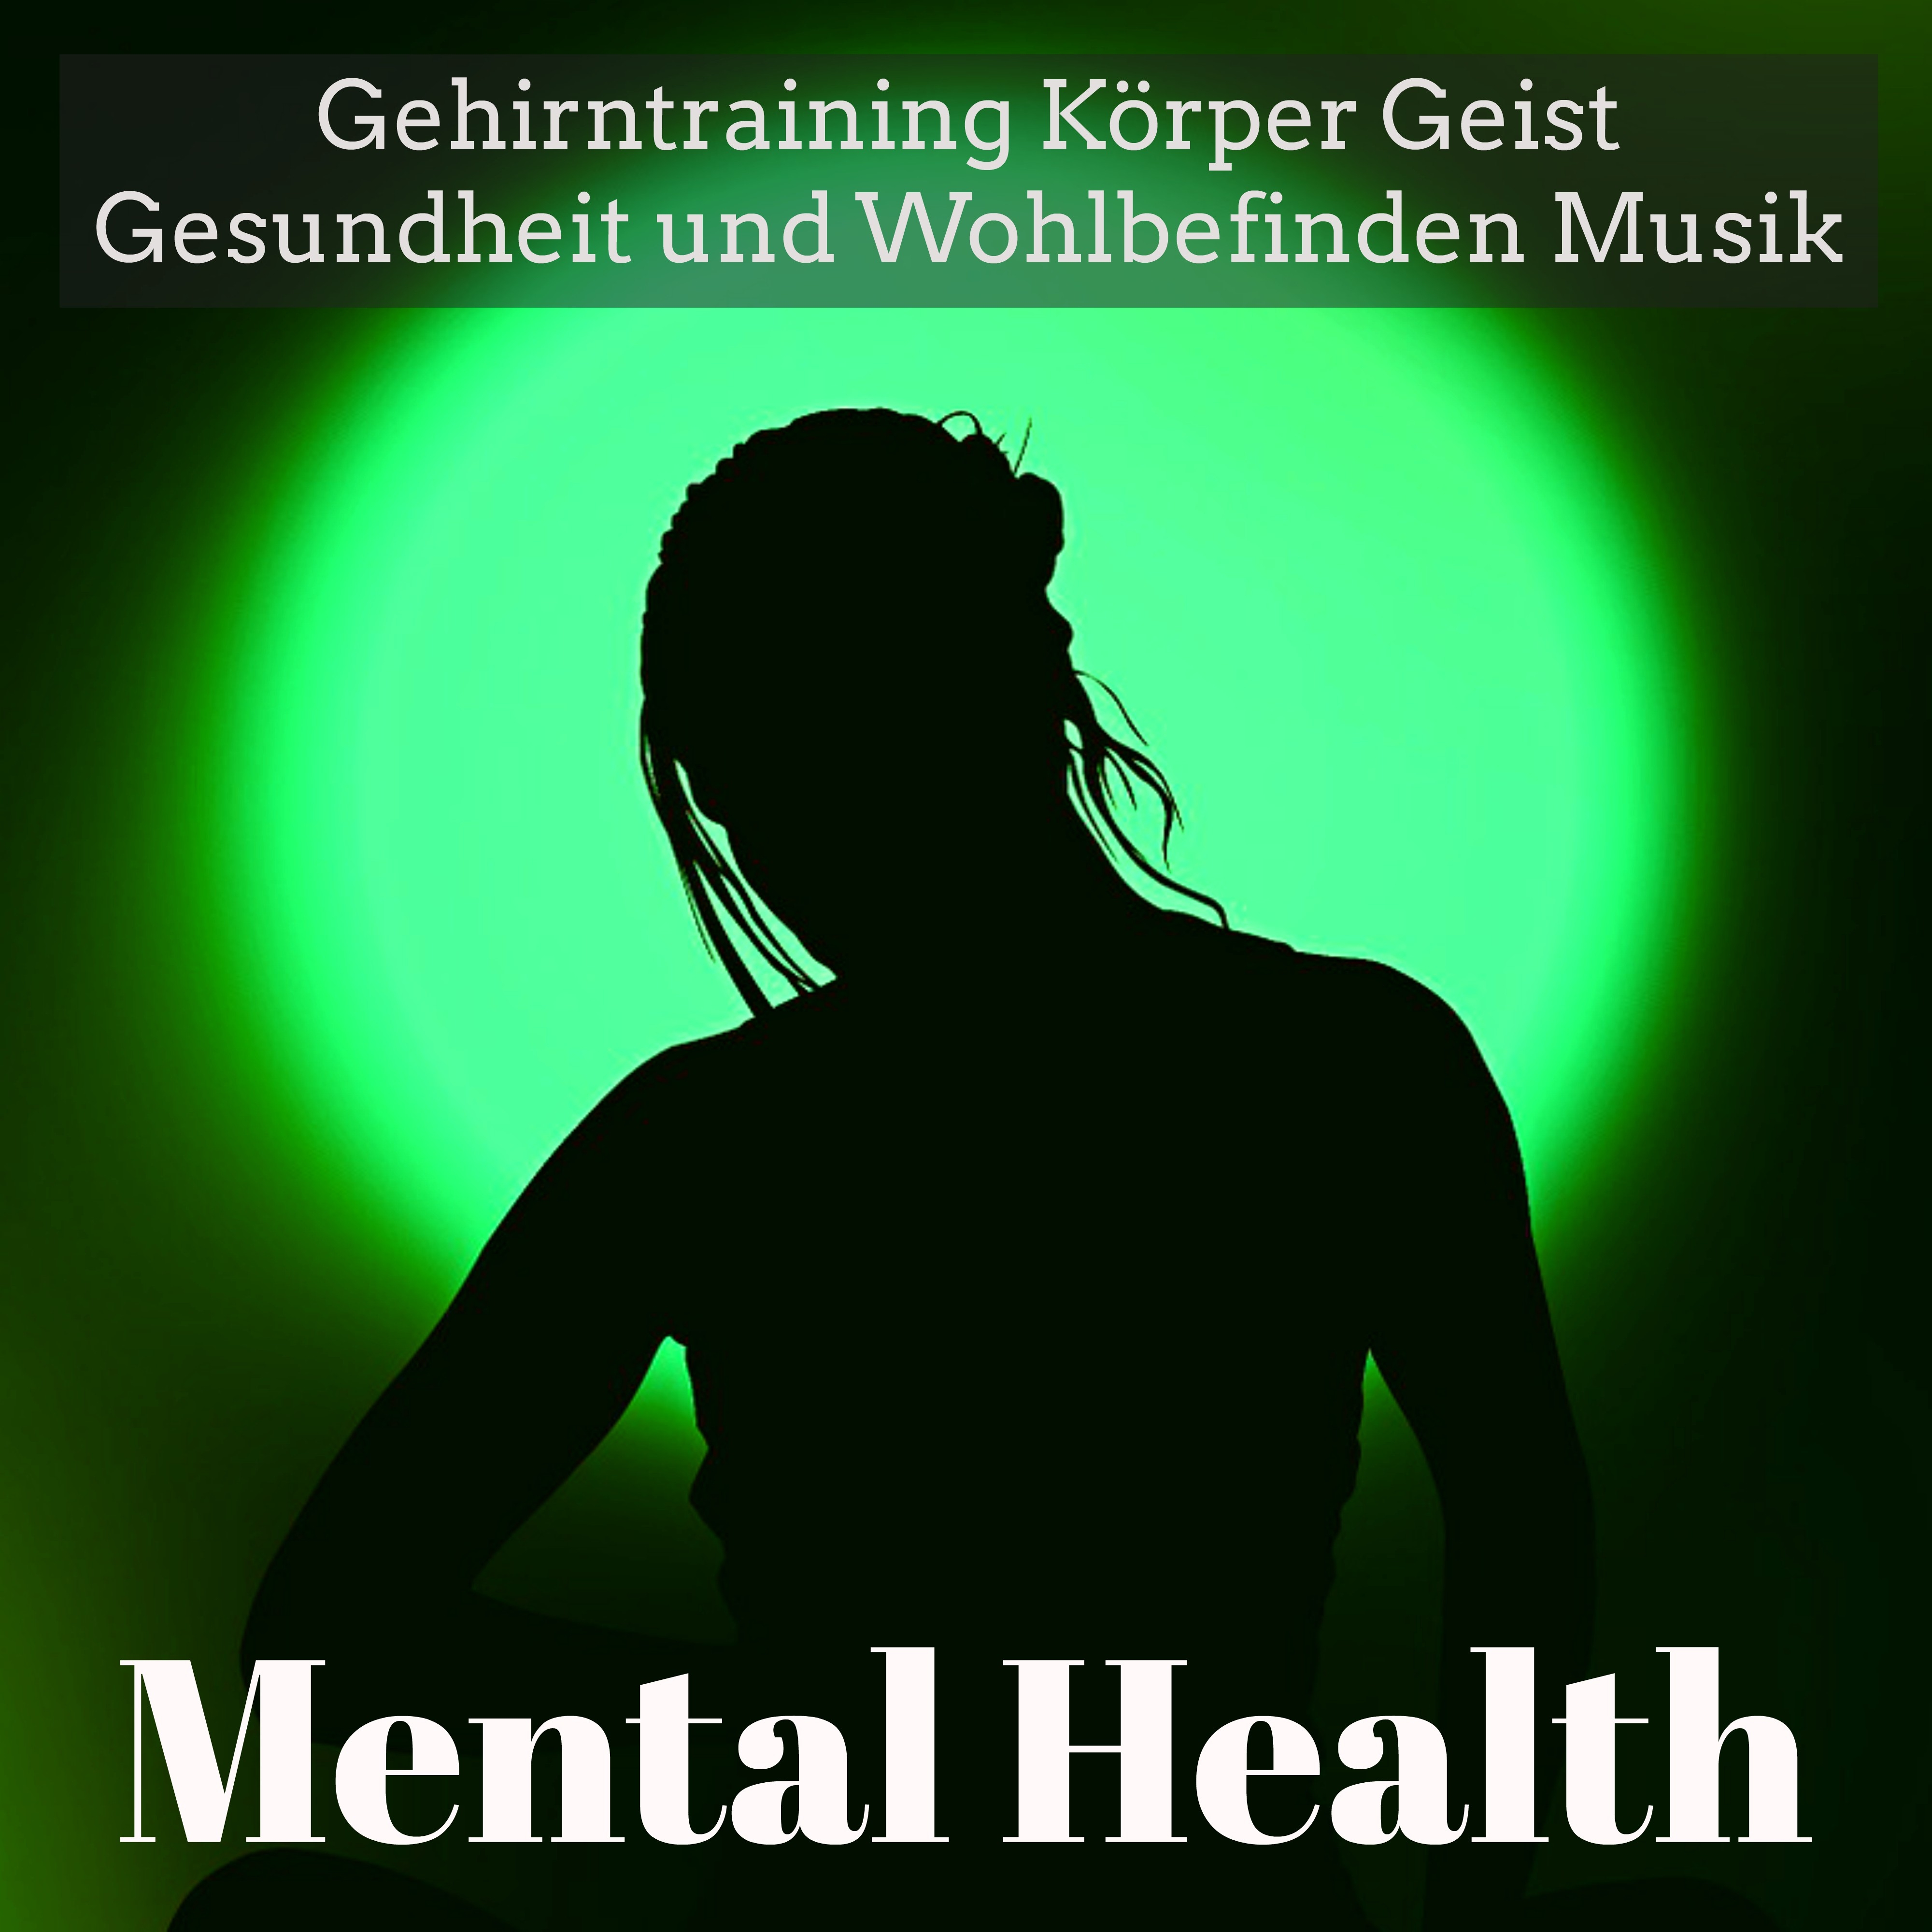 Mental Health  Gehirntraining K rper Geist Gesundheit und Wohlbefinden Musik fü r Achtsamkeitstraining Spirituelle Heilung mit Natur New Age Instrumental Ger usche